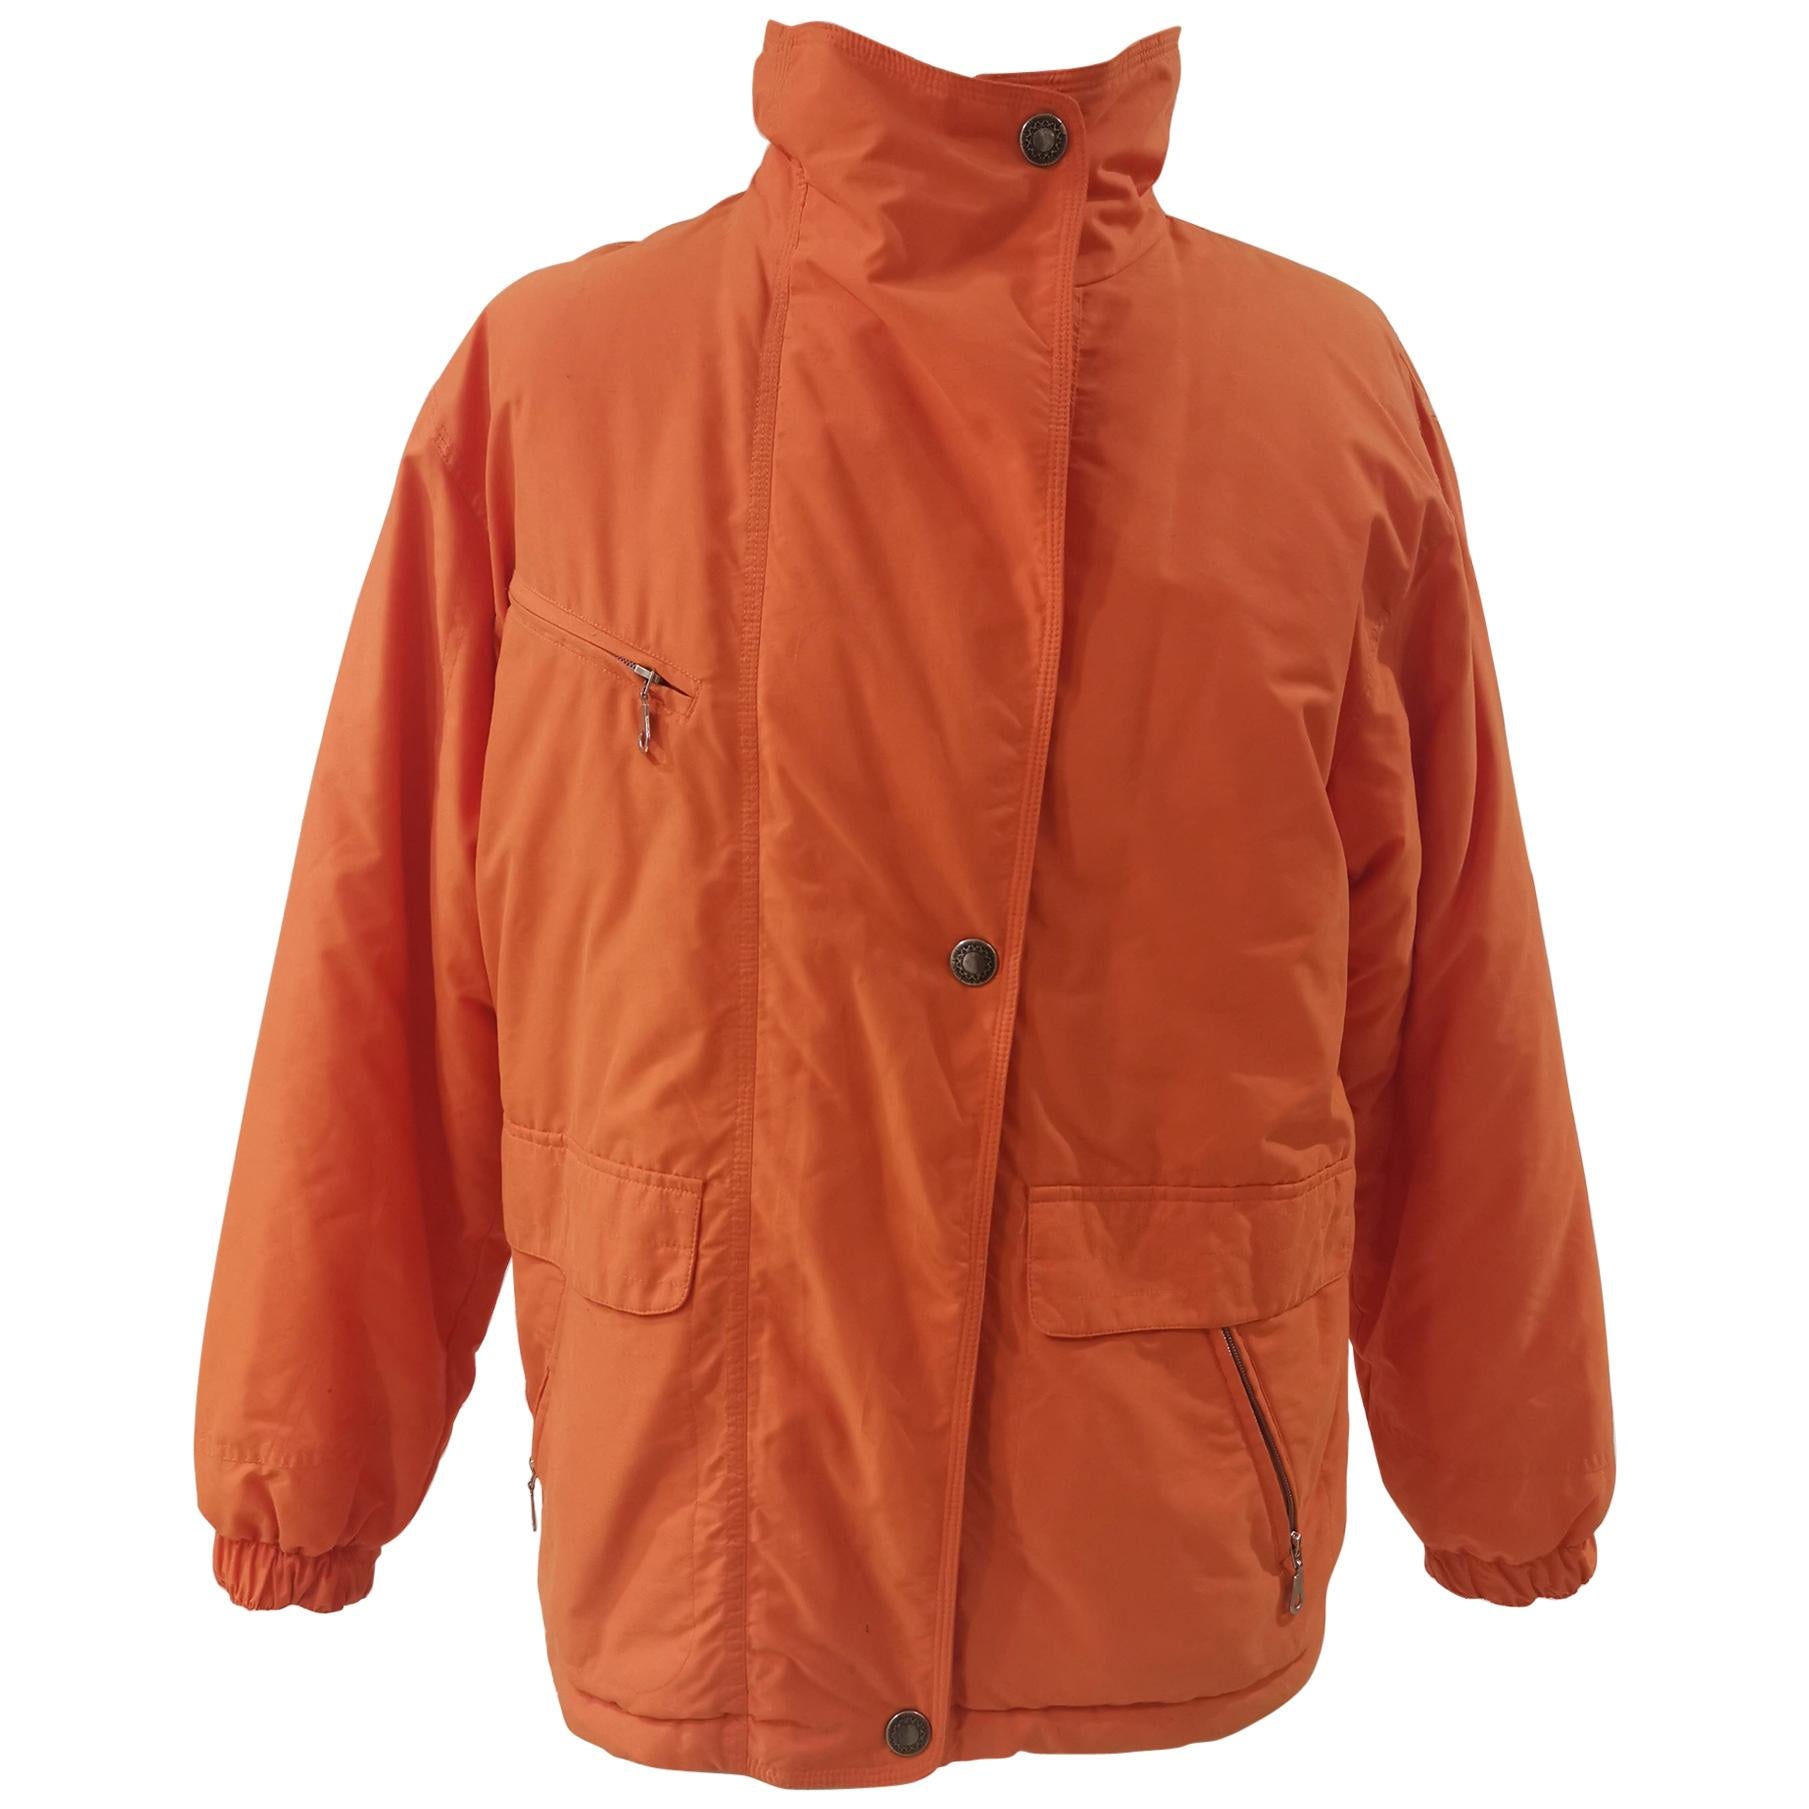 FullForce orange bomber jacket